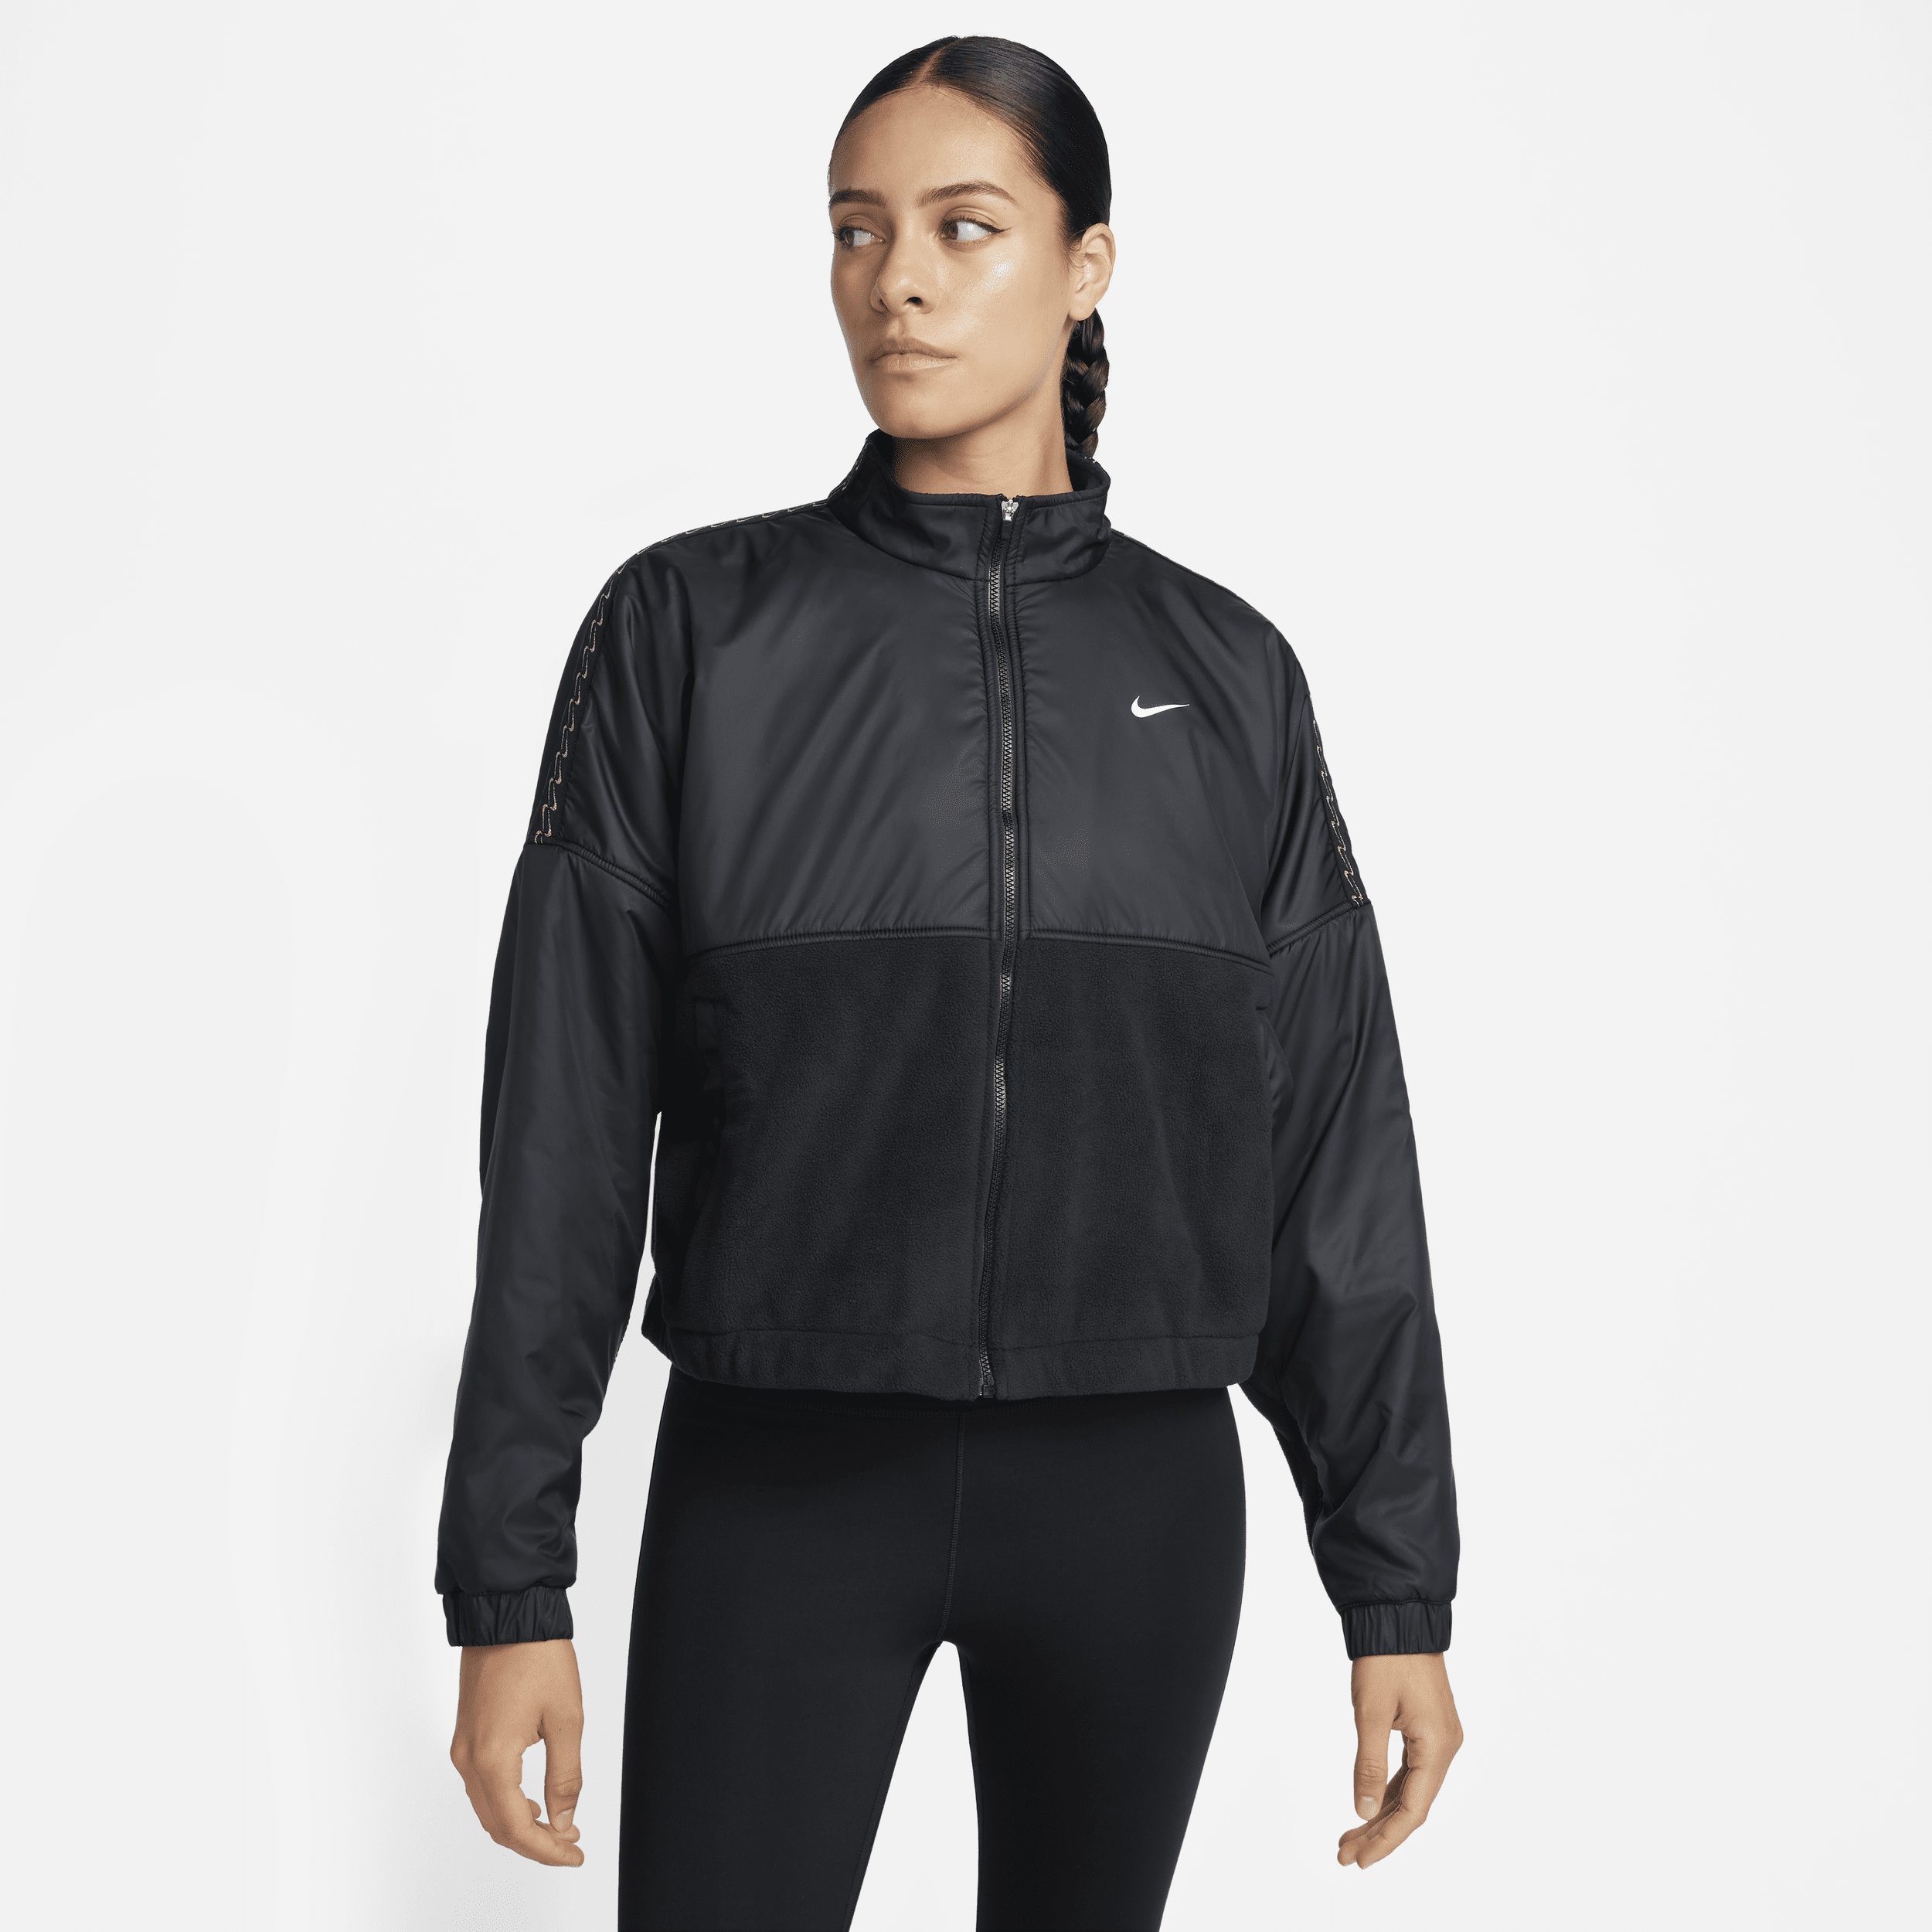 Nike Therma-FIT One damesjack van fleece met rits over de hele lengte - Zwart